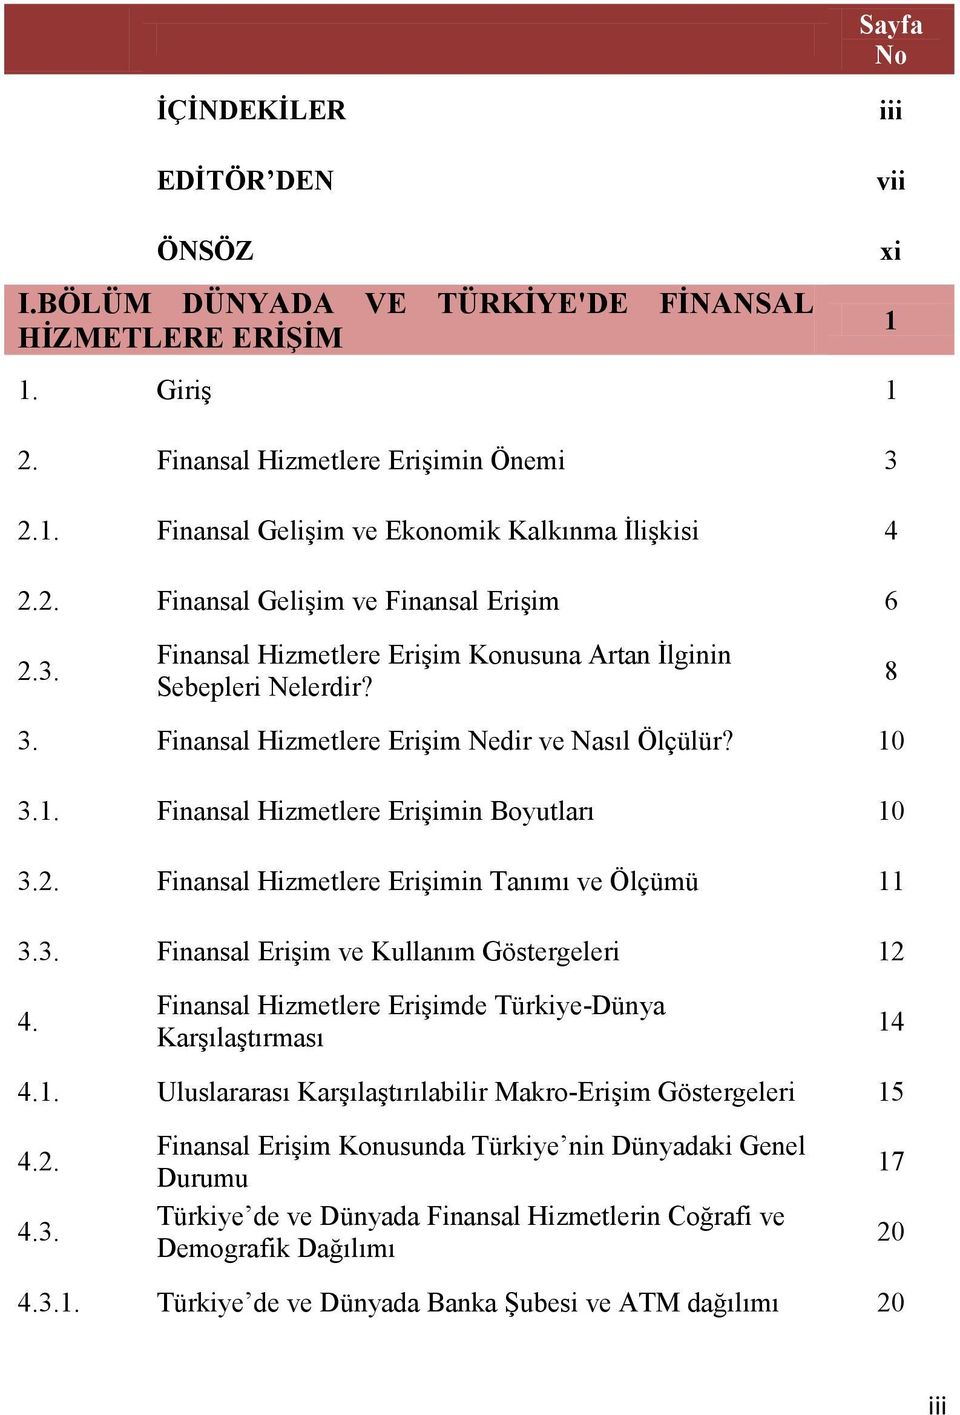 2. Finansal Hizmetlere Erişimin Tanımı ve Ölçümü 11 3.3. Finansal Erişim ve Kullanım Göstergeleri 12 4. Finansal Hizmetlere Erişimde Türkiye-Dünya Karşılaştırması 14 4.1. Uluslararası Karşılaştırılabilir Makro-Erişim Göstergeleri 15 4.